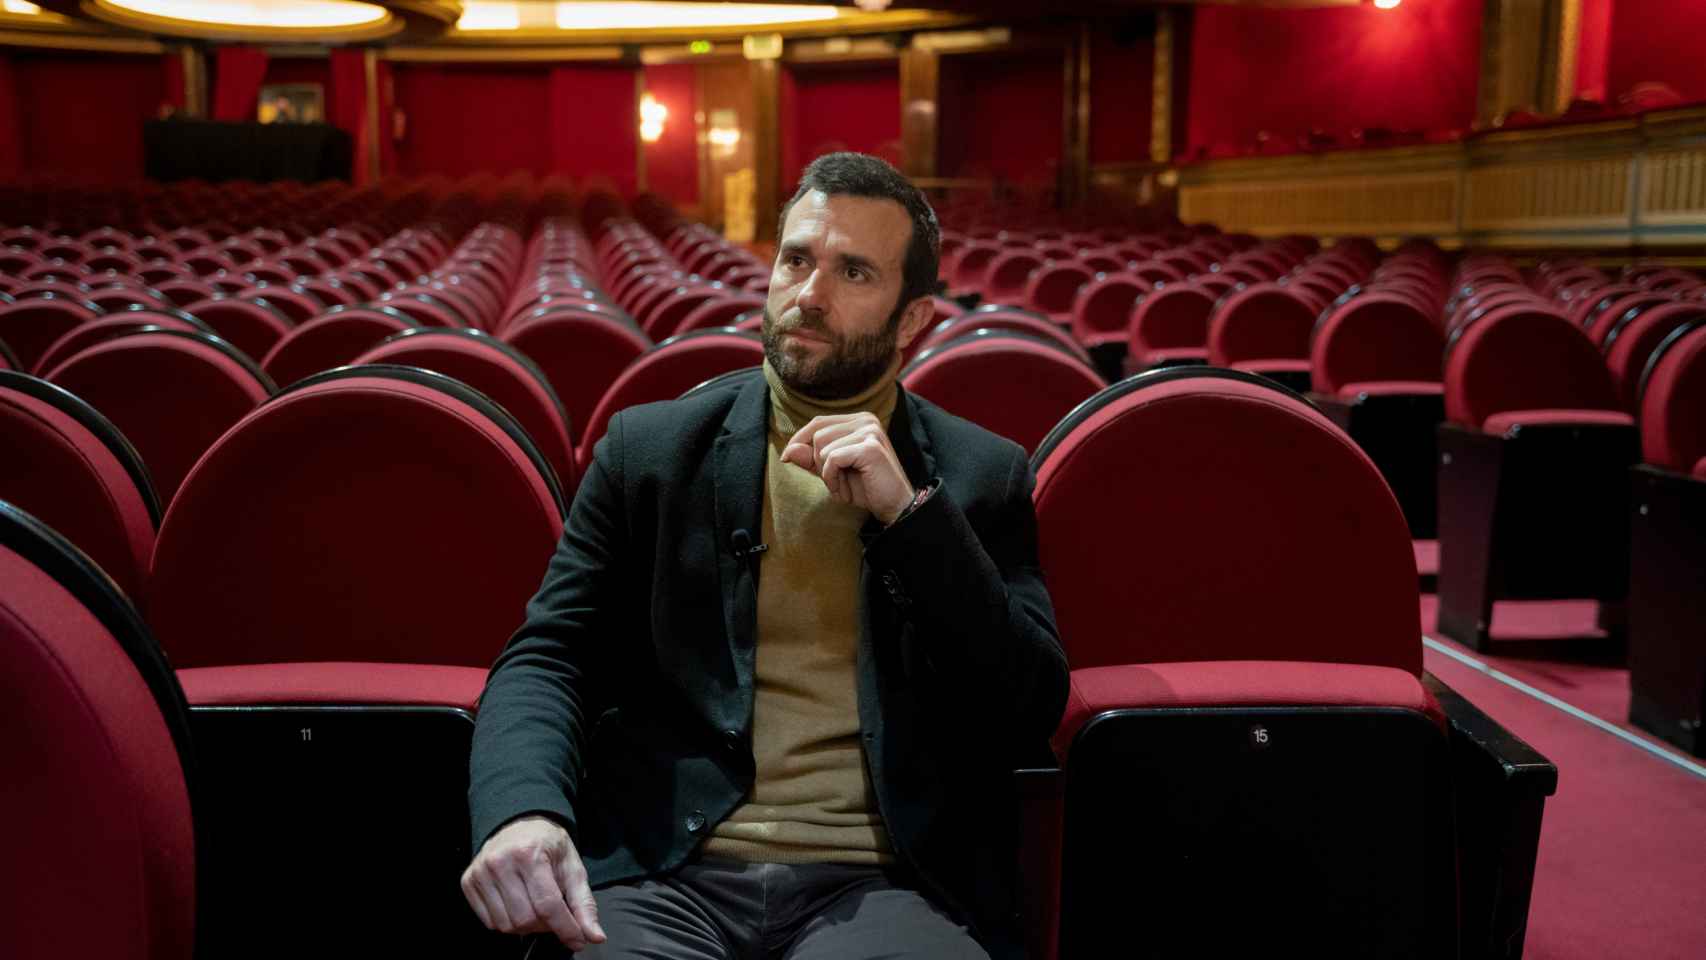 El director residente de 'El Rey León', Zenón Recalde, sentado en las butacas del Teatro Lope de Vega.